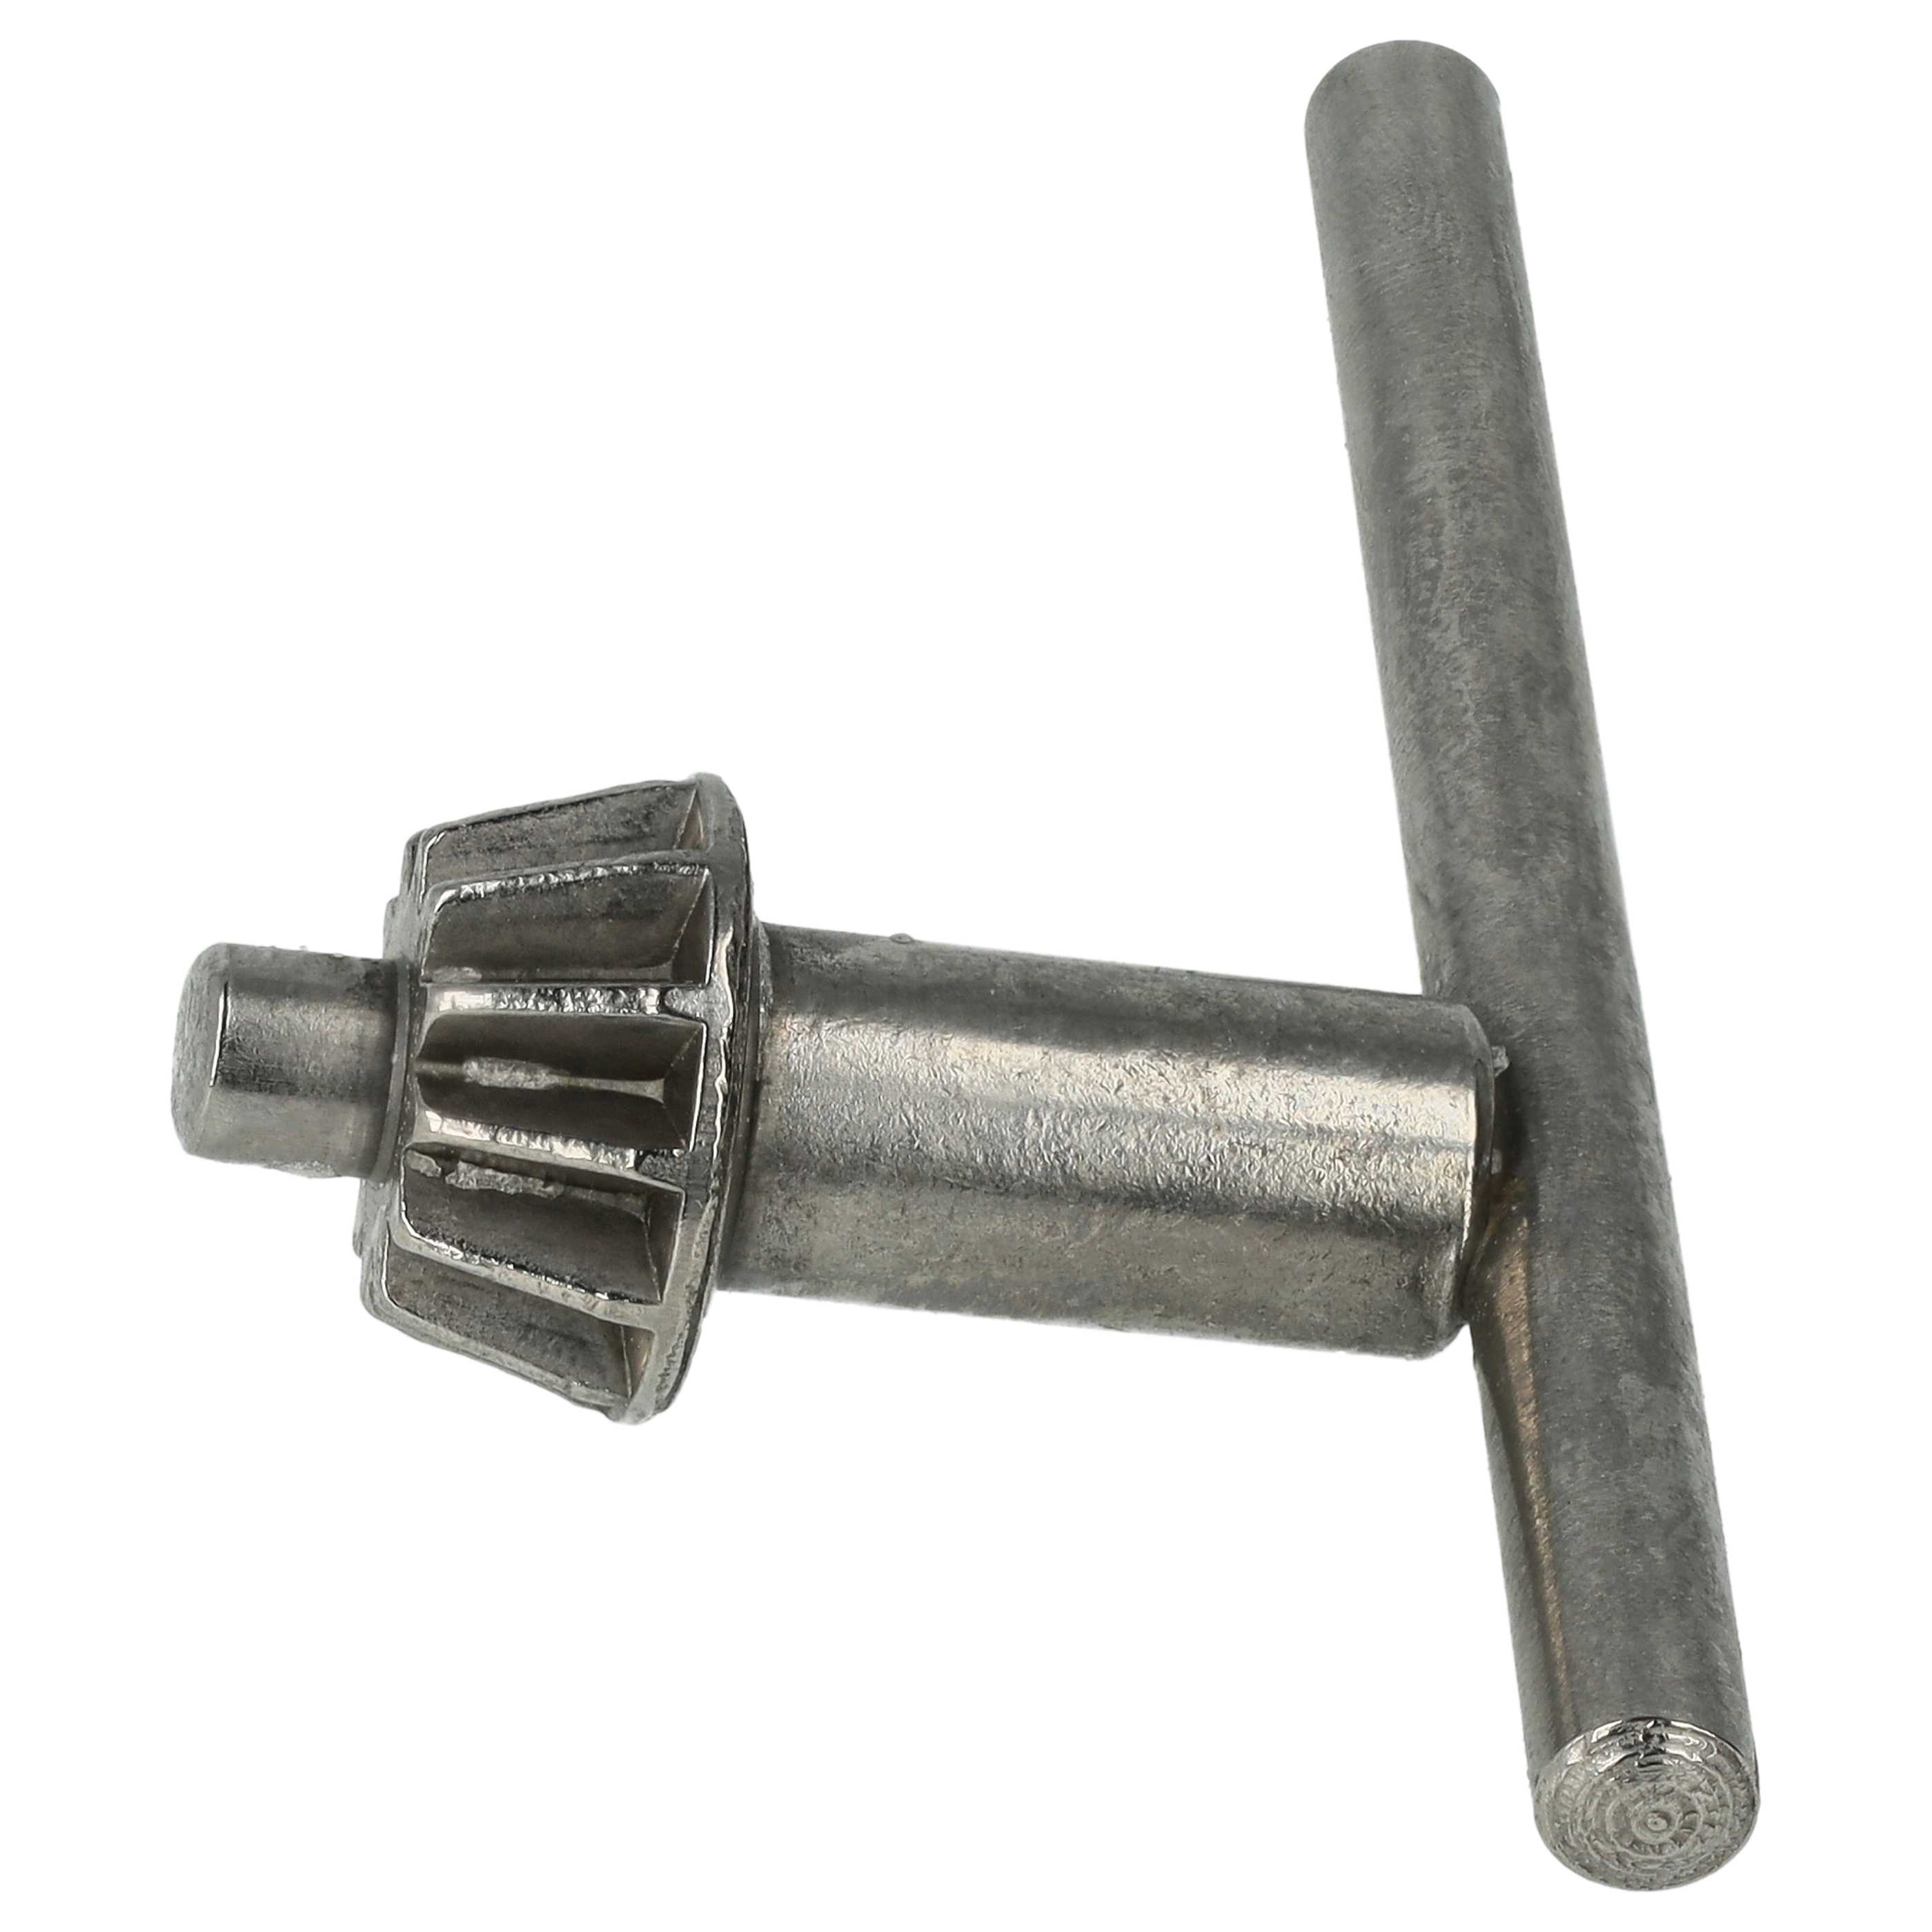 Mandrin avec clé remplace Kress 30648 pour visseuse, perceuse à percussion – 1,5 - 13mm, 13mm (1/2") x 20